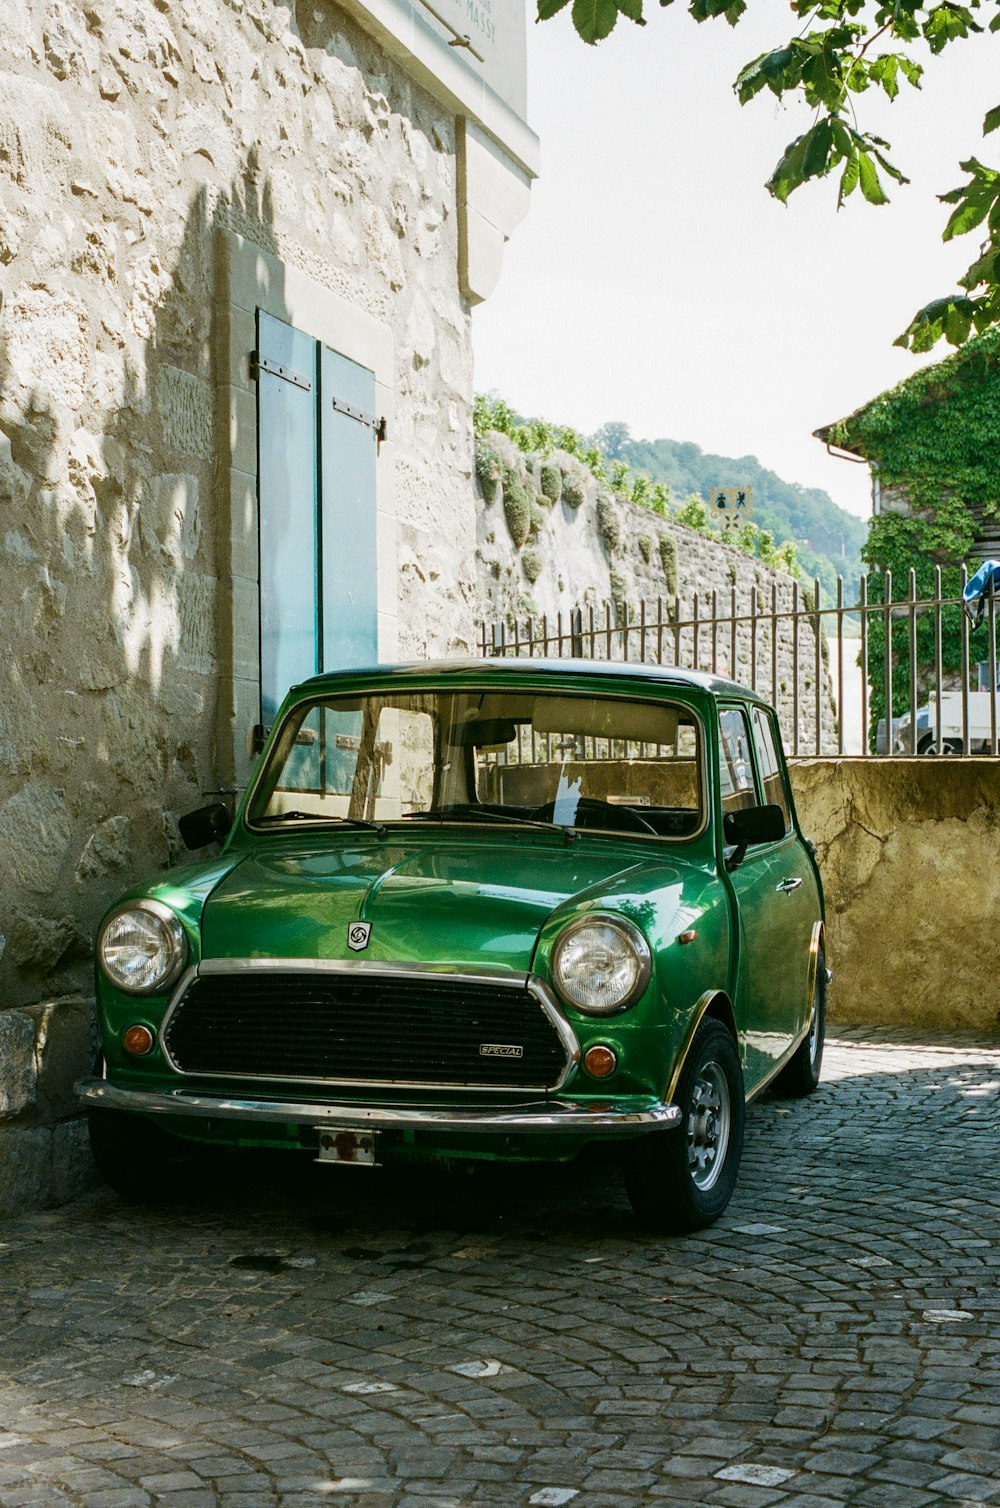 Ein kleines grünes Auto, das auf einer Kopfsteinpflasterstraße geparkt ist